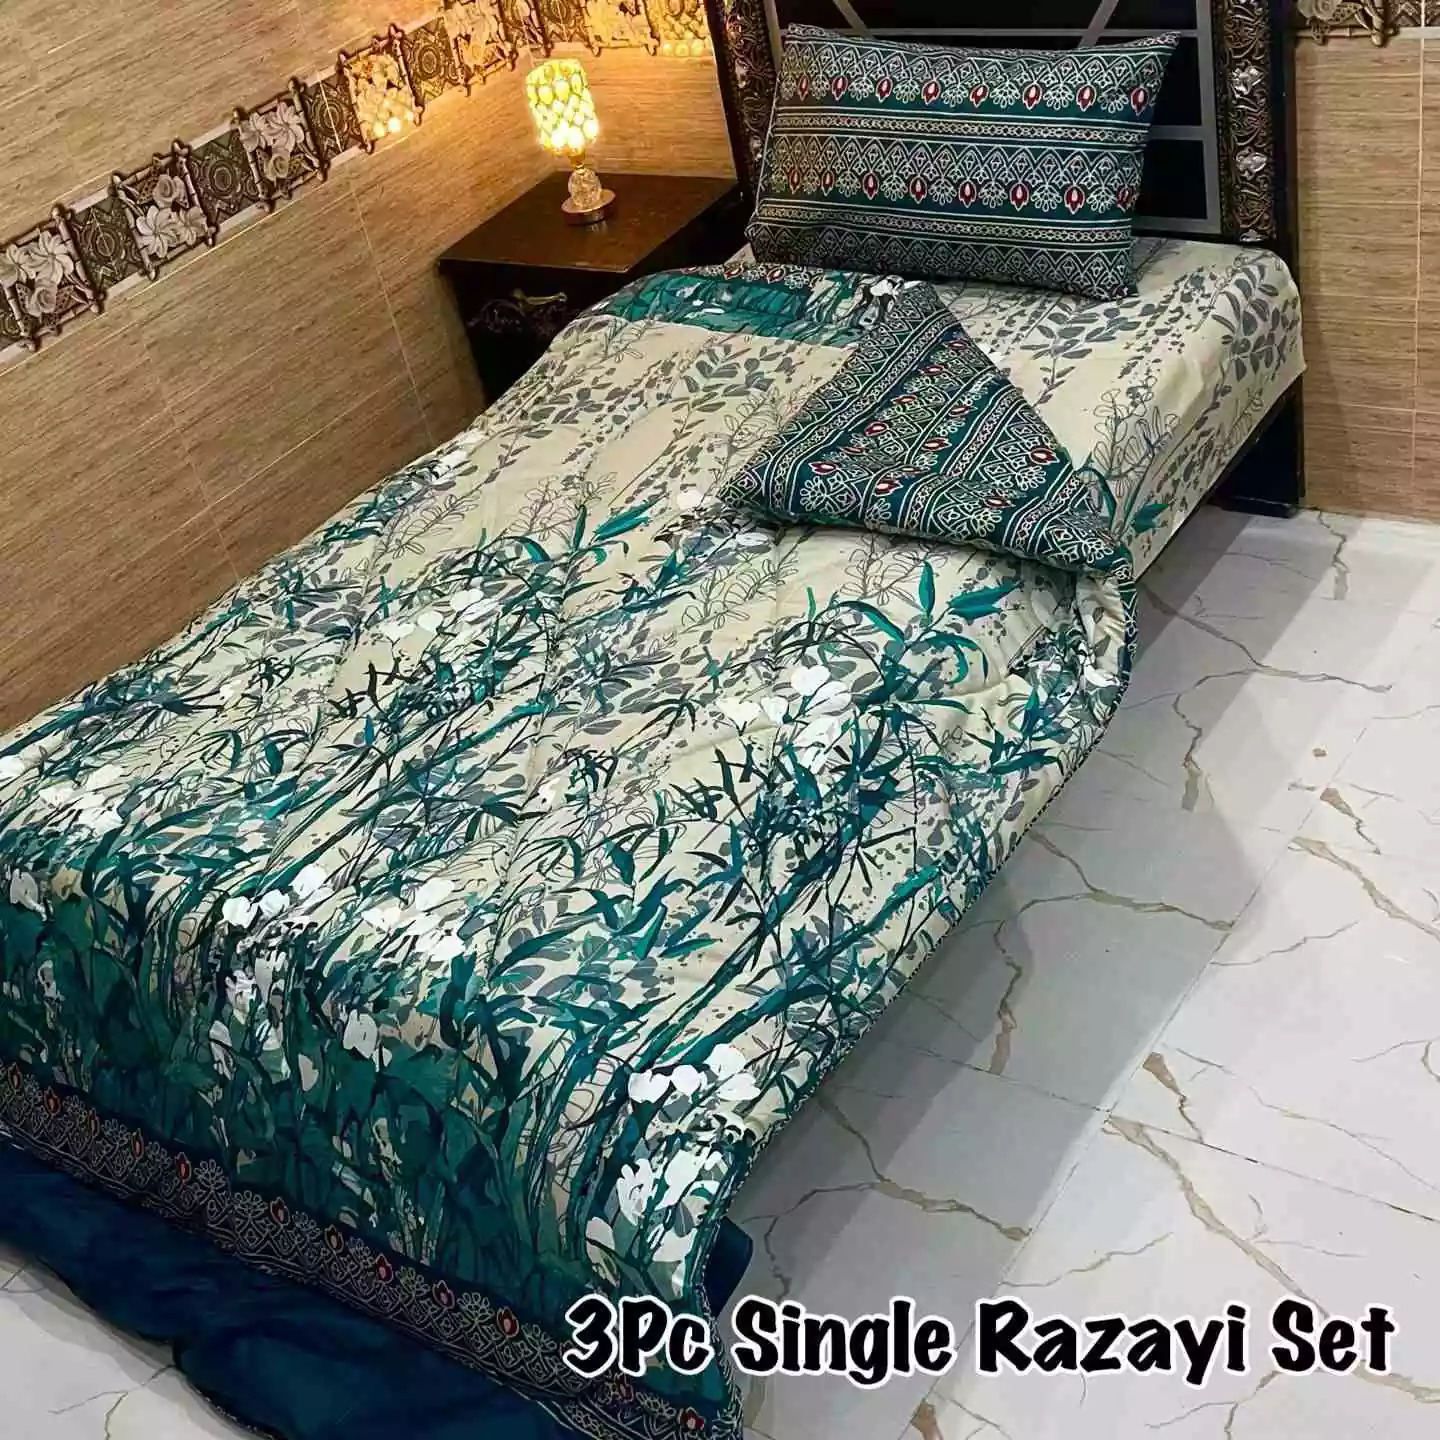 DF-VRSSB-12: DFY 3Pc Single Bed Vicky Razai Set